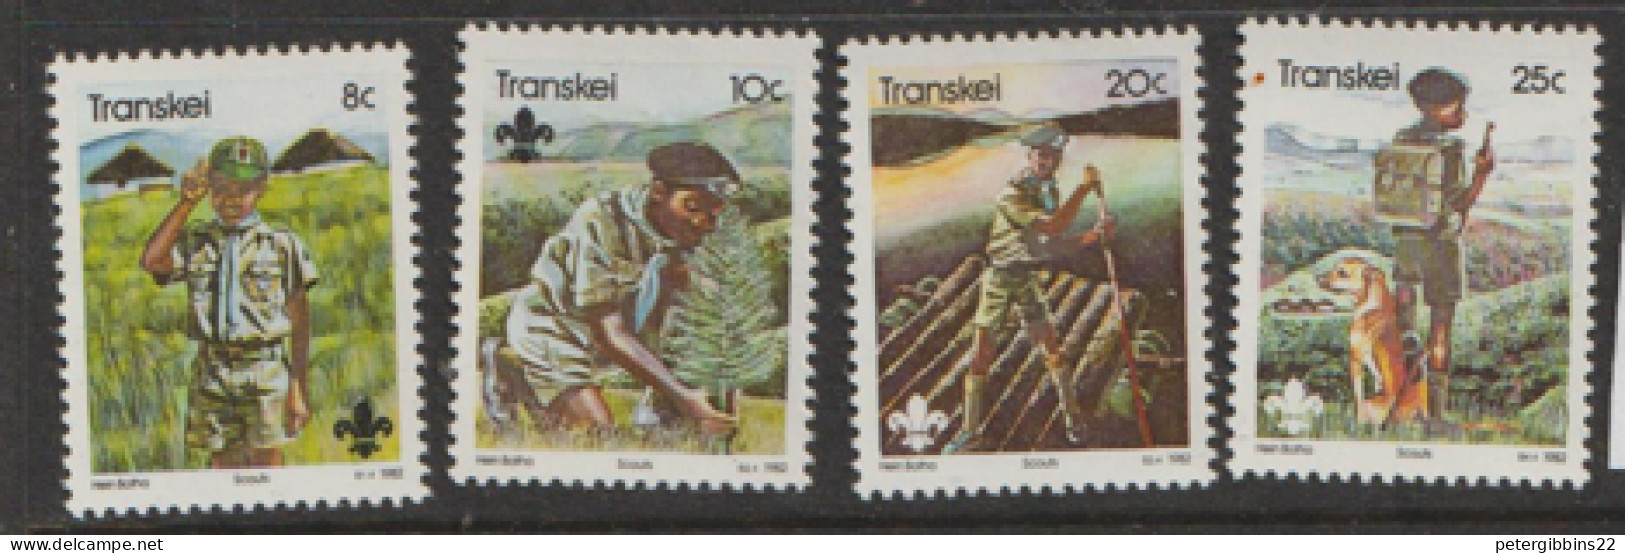 Transkei  1982 SG 104-7  Scouts  Unmounted Mint - Transkei